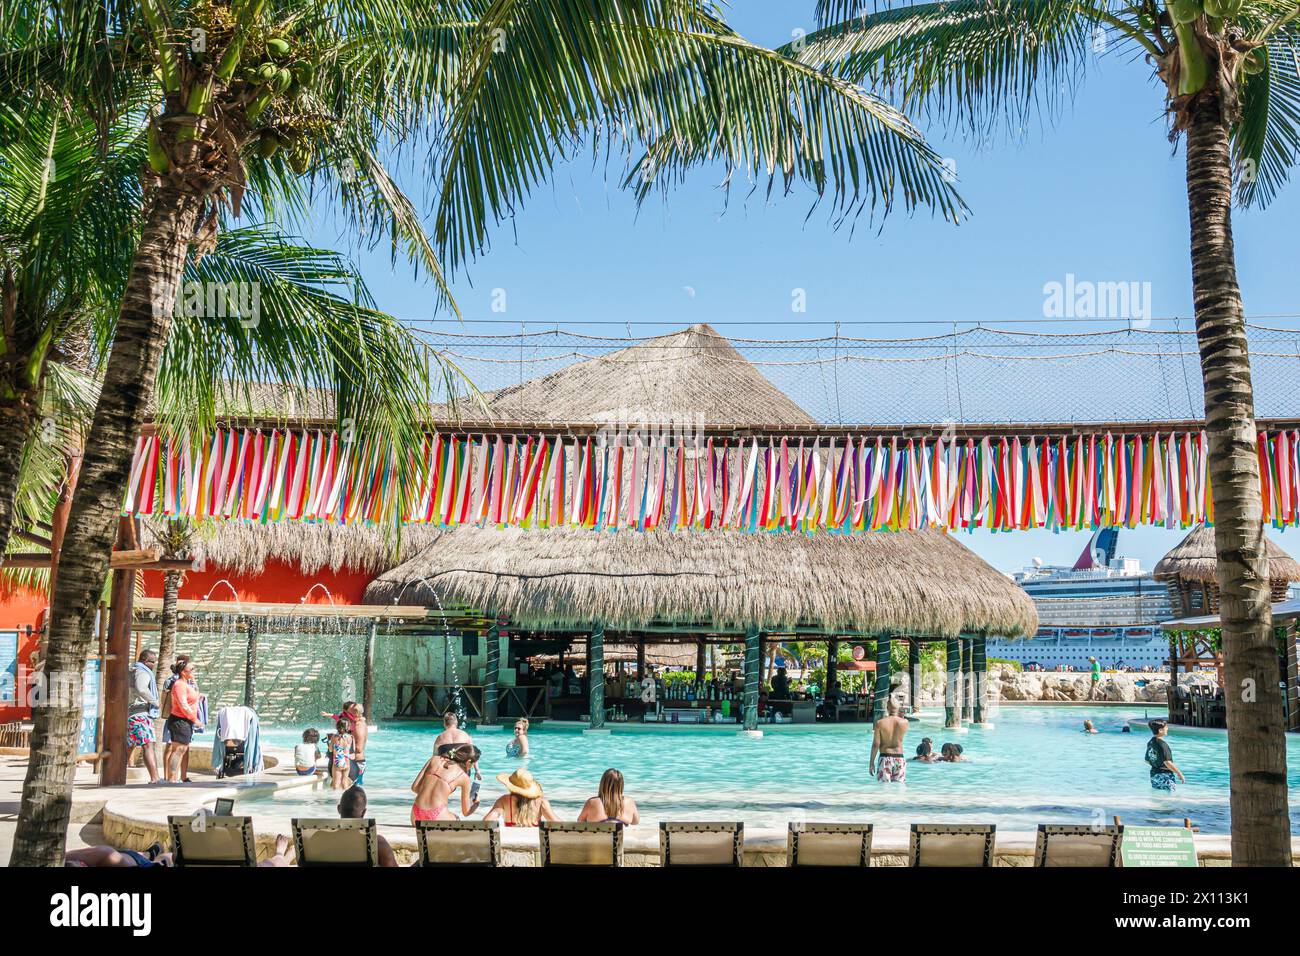 Costa Maya Mexiko, Kreuzfahrthafen, norwegisches Schiff Joy Cruise Line, 7-tägiger Karibikwanderweg, Swimmingpool, schwimmende Bar, Palapa-Strohdach, getrocknete Palme Stockfoto